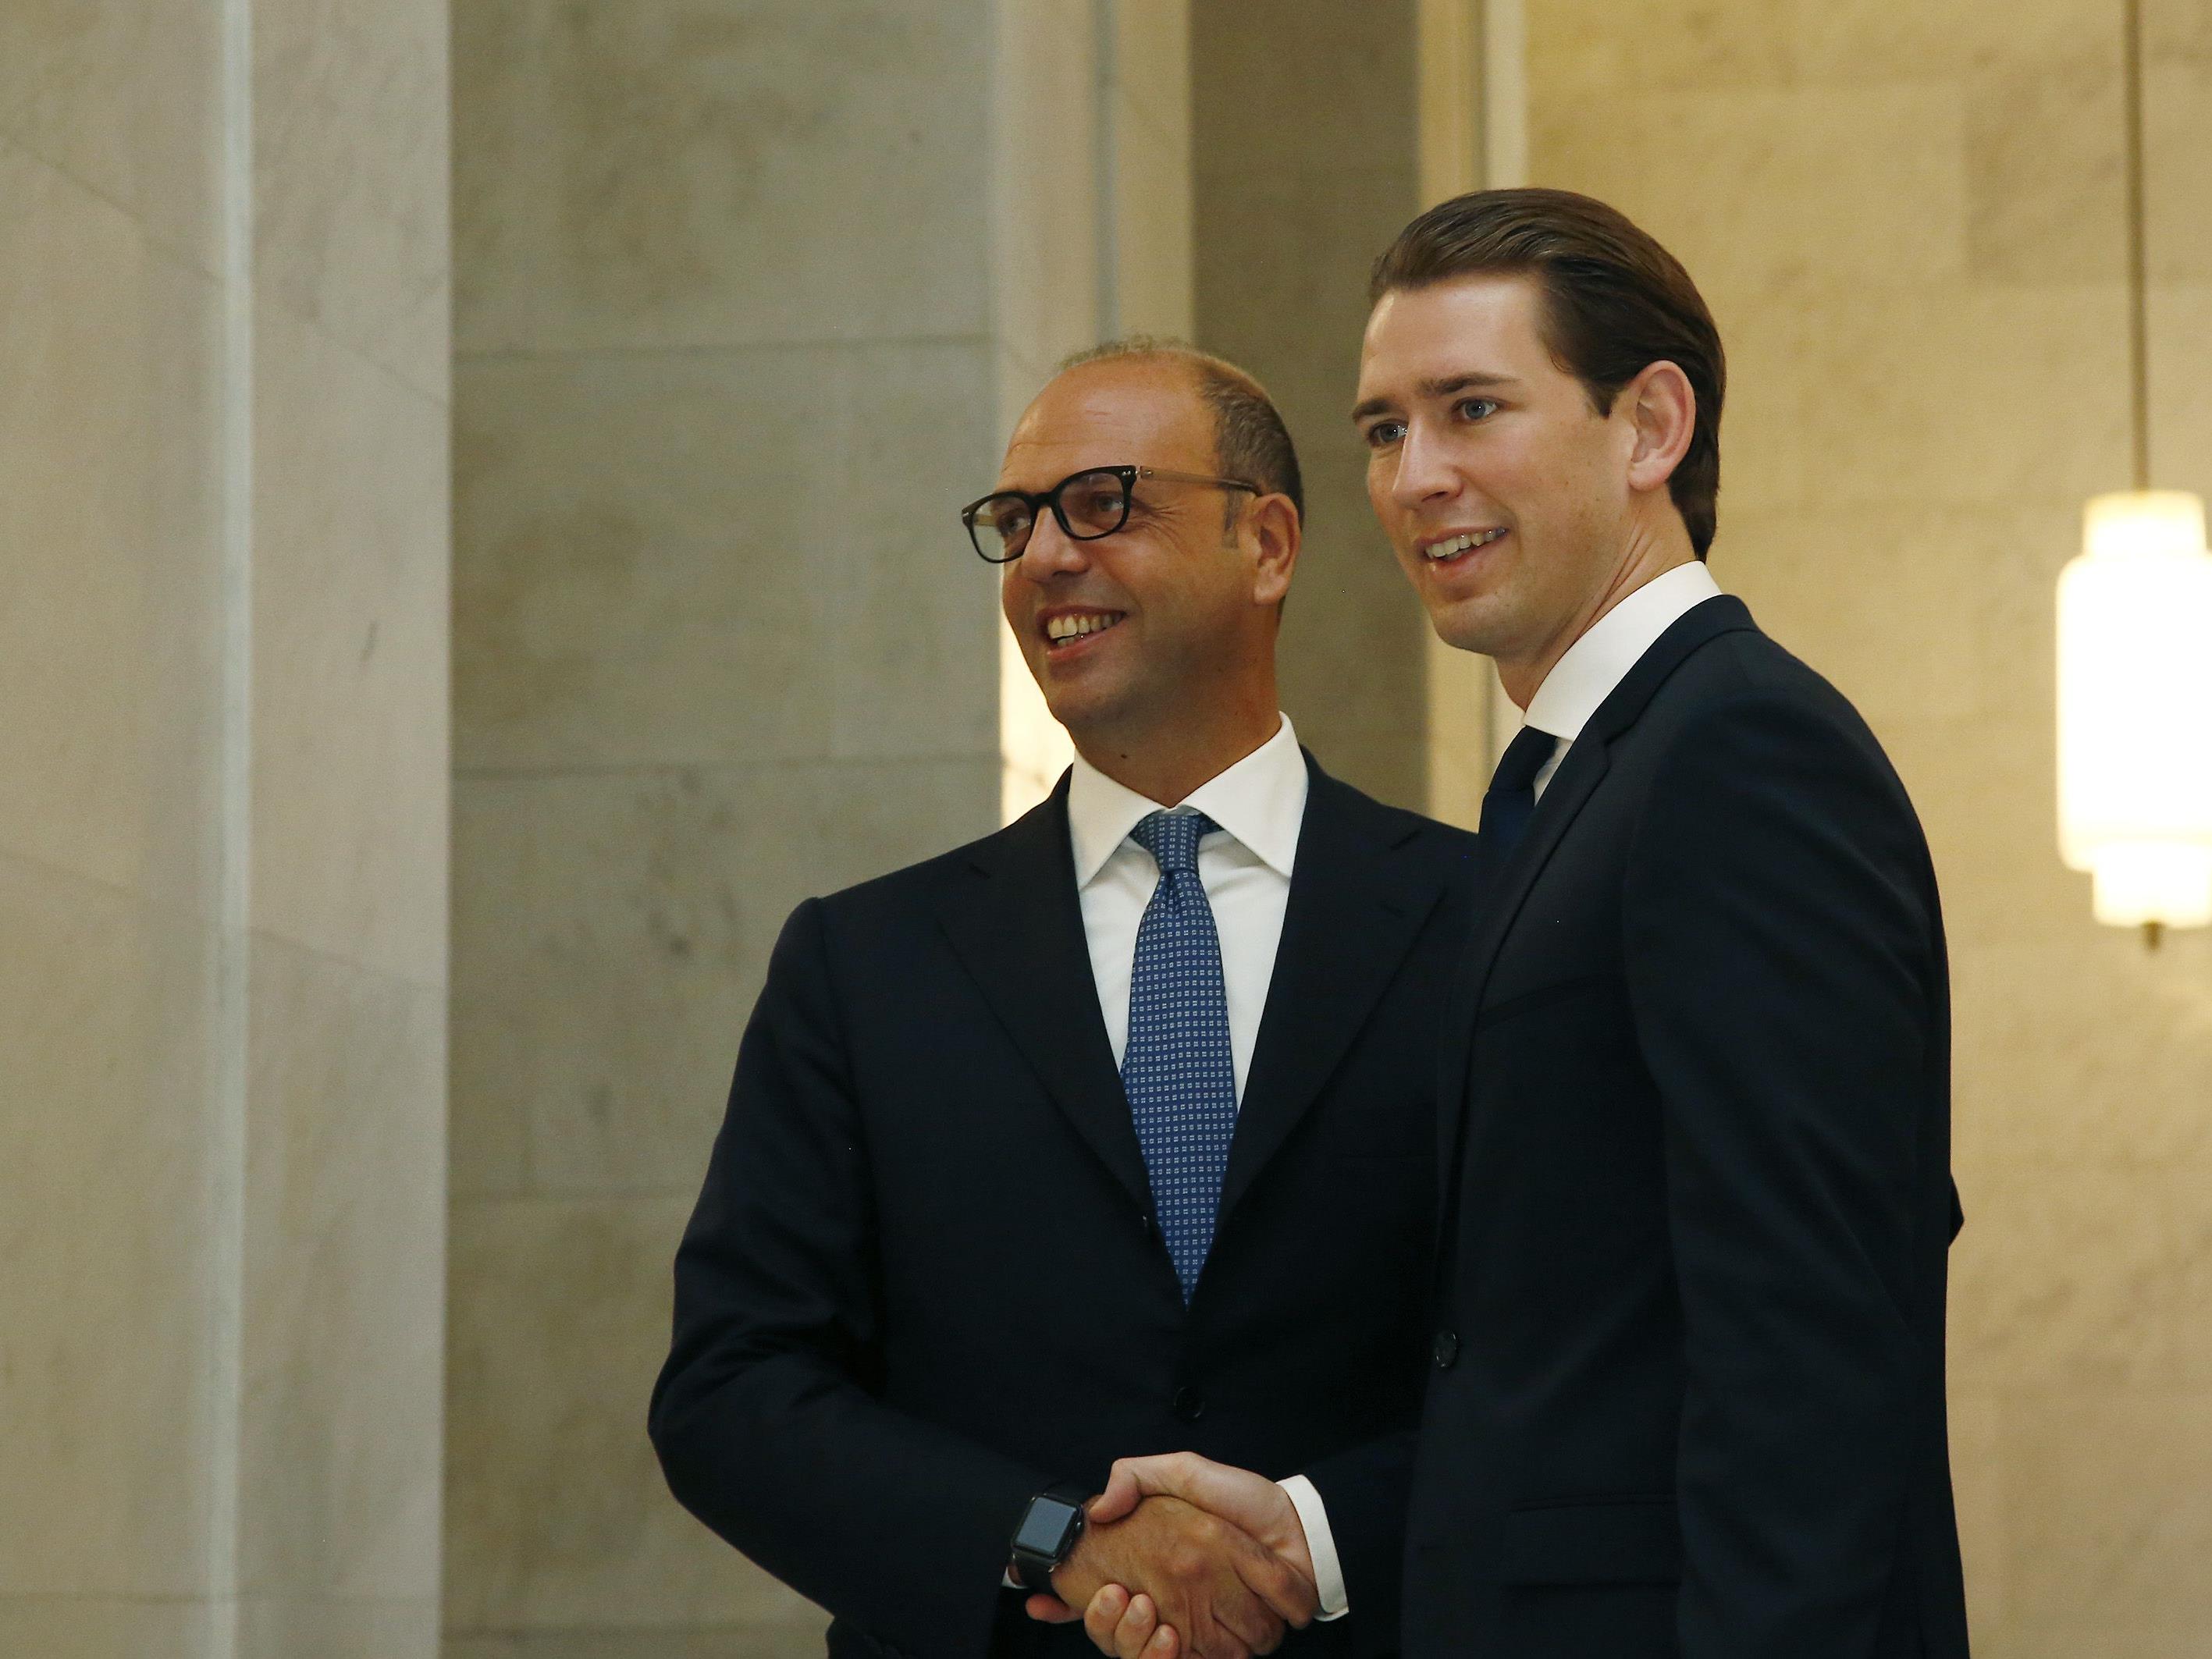 Außenminister Sebastian Kurz trifft den italienischen Außenminister Angelino Alfano KURZ NIMMT AN DER MIGRATIONSKONFERENZ IN ROM TEIL. KURZ/ALFANO